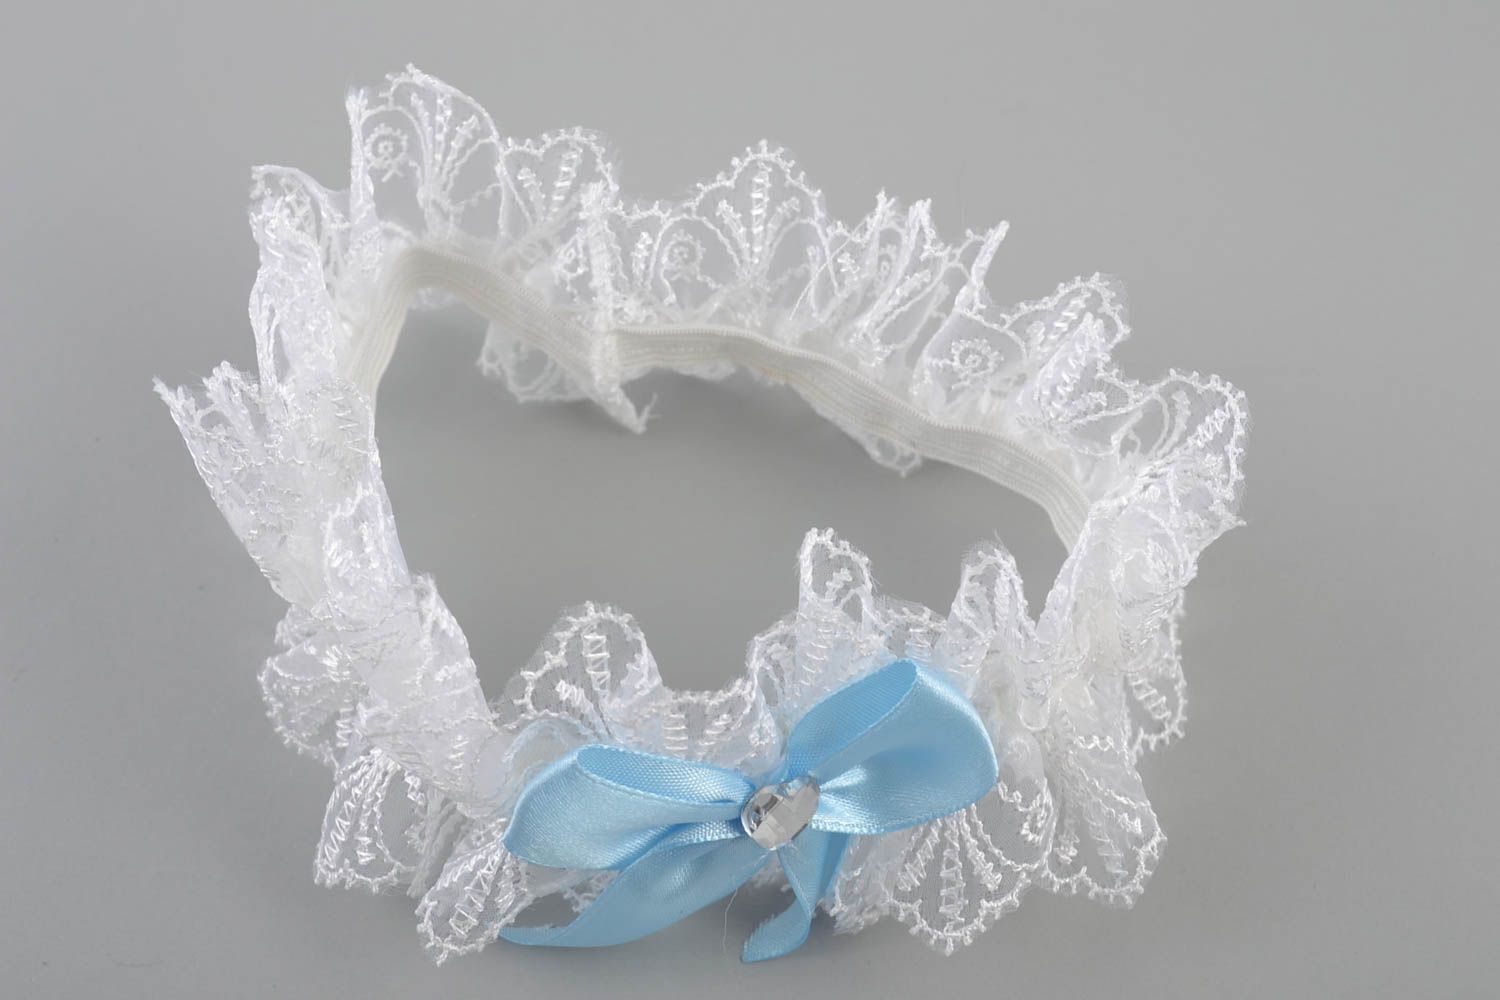 Jarretière de mariée en dentelle faite main blanche avec noeud en ruban bleu photo 2